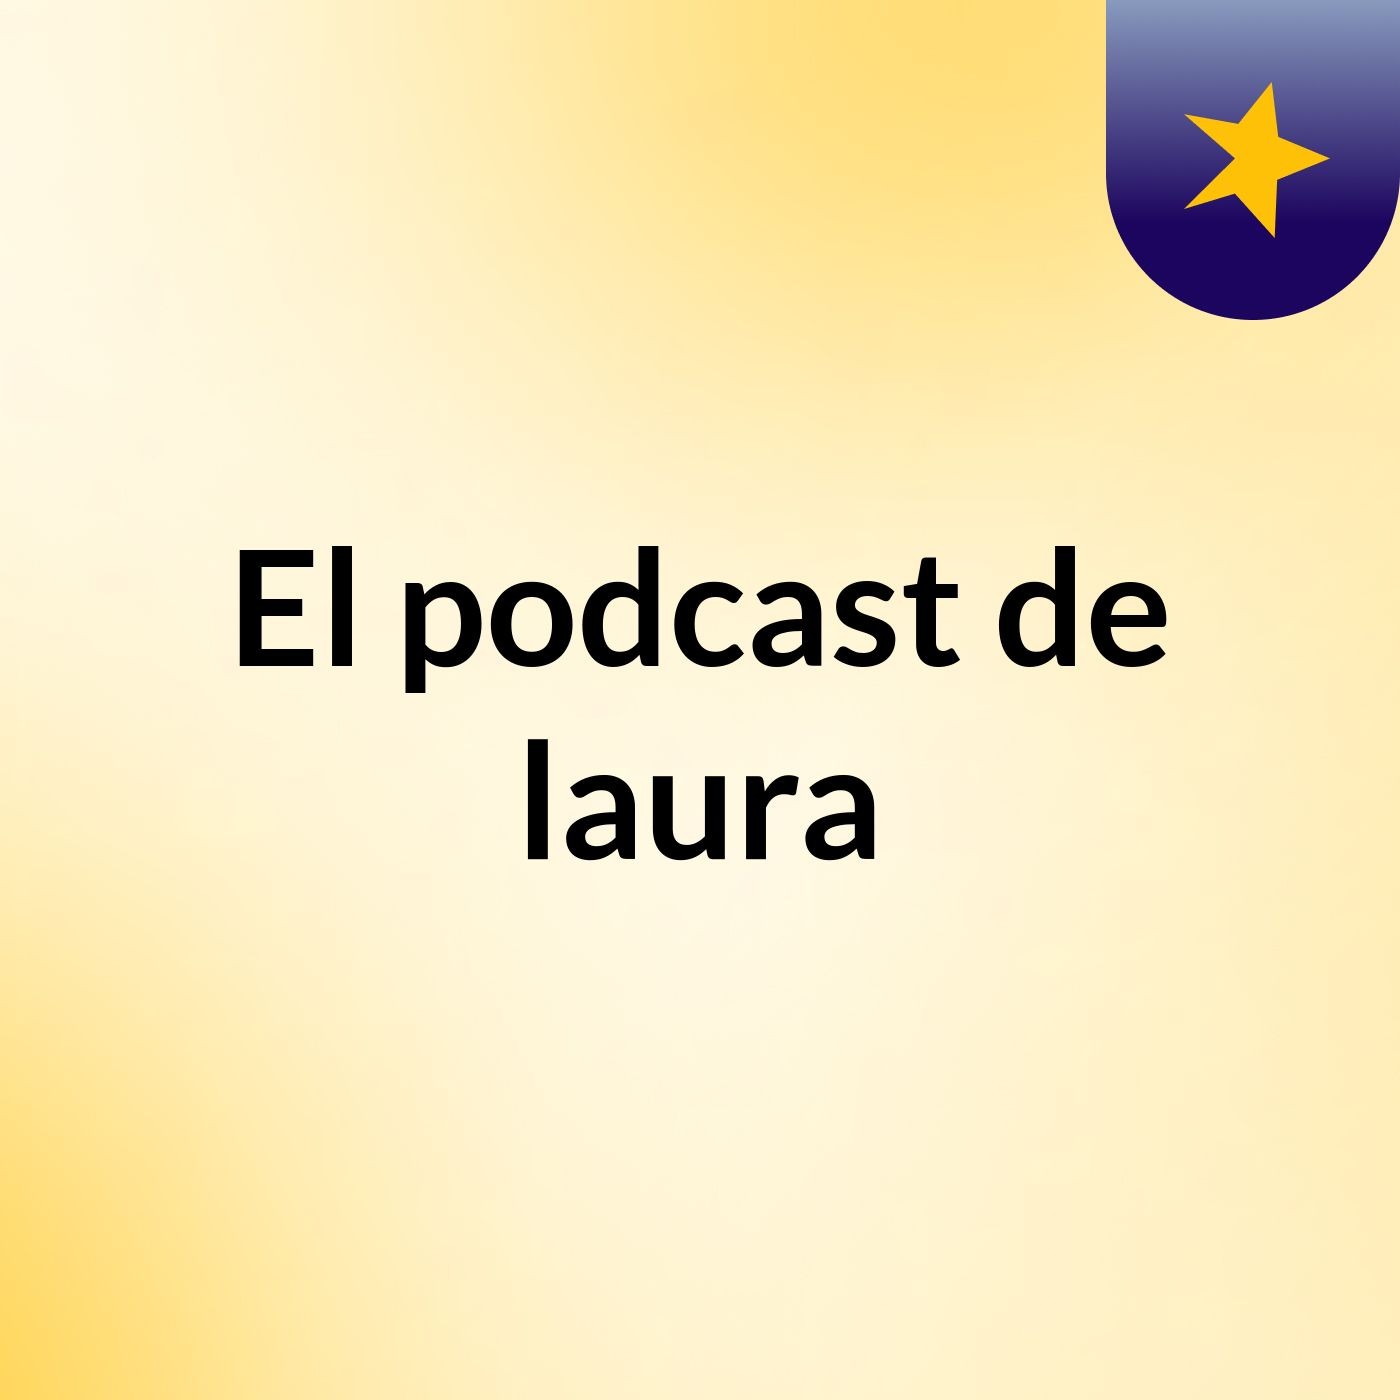 El podcast de laura